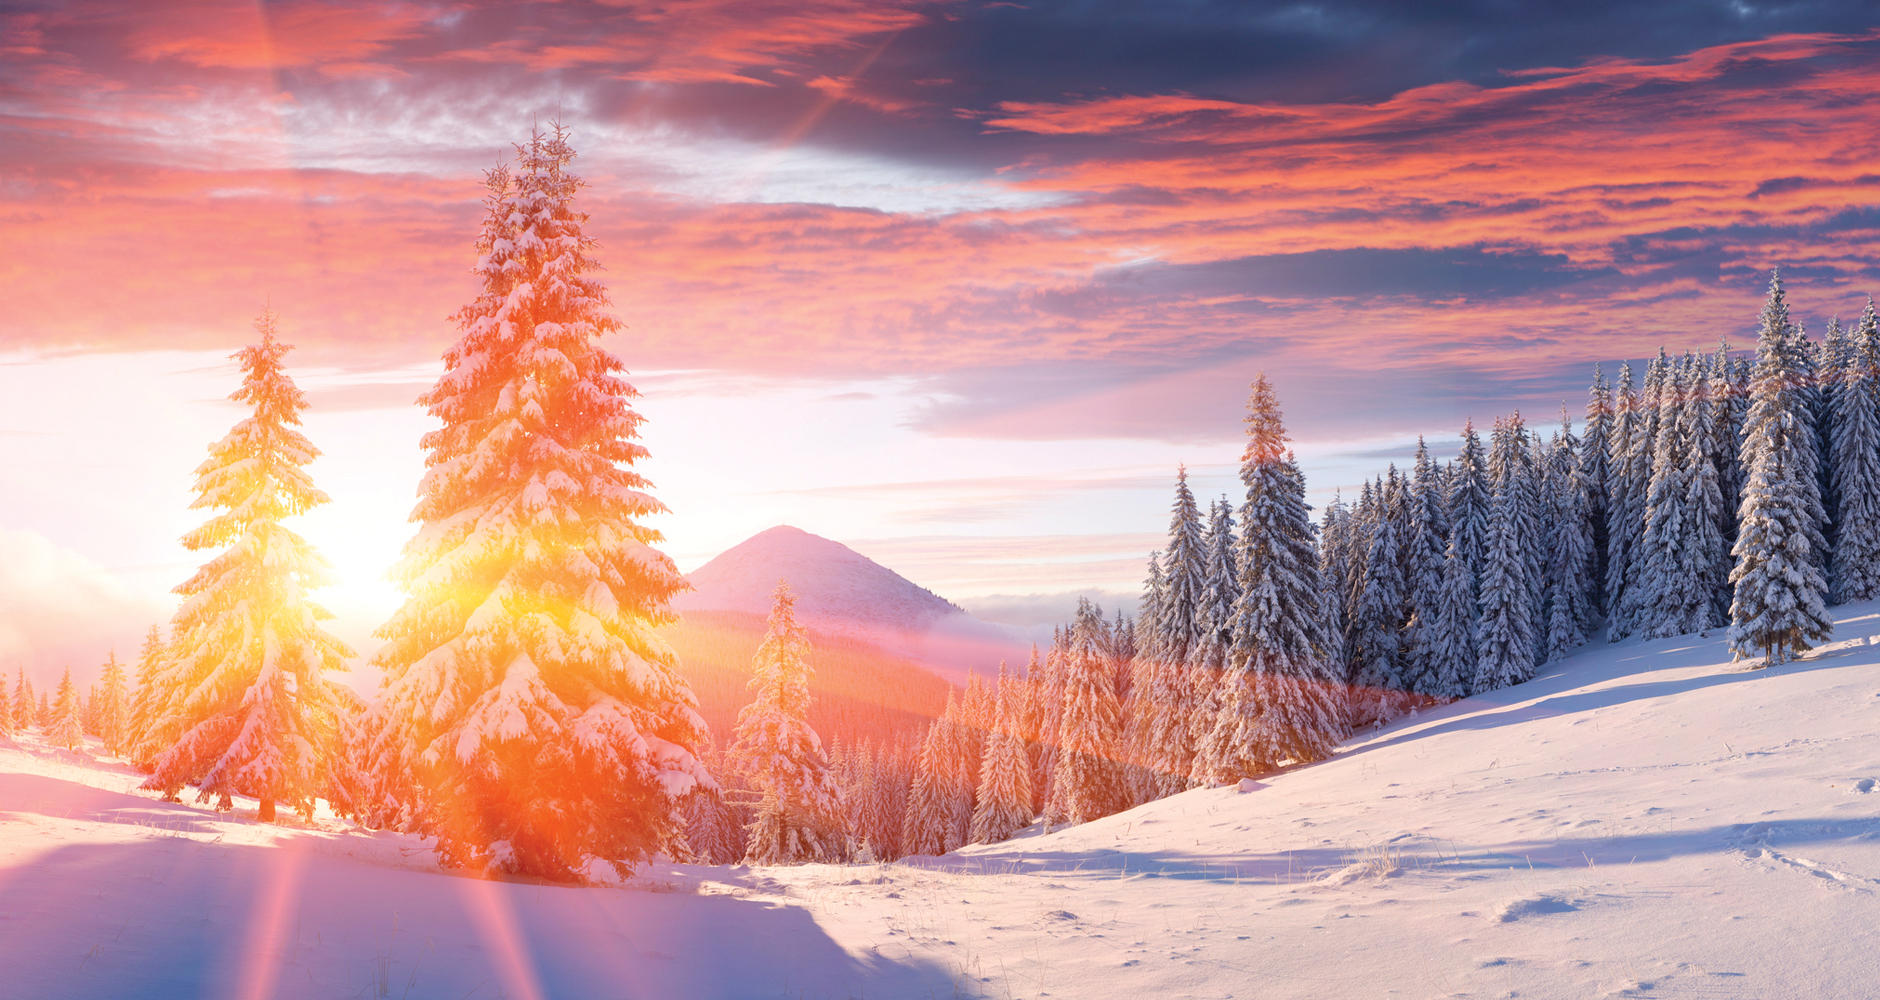  
Зимното слънцестоене е важен астрологичен феномен, когато Слънцето се отдалечава